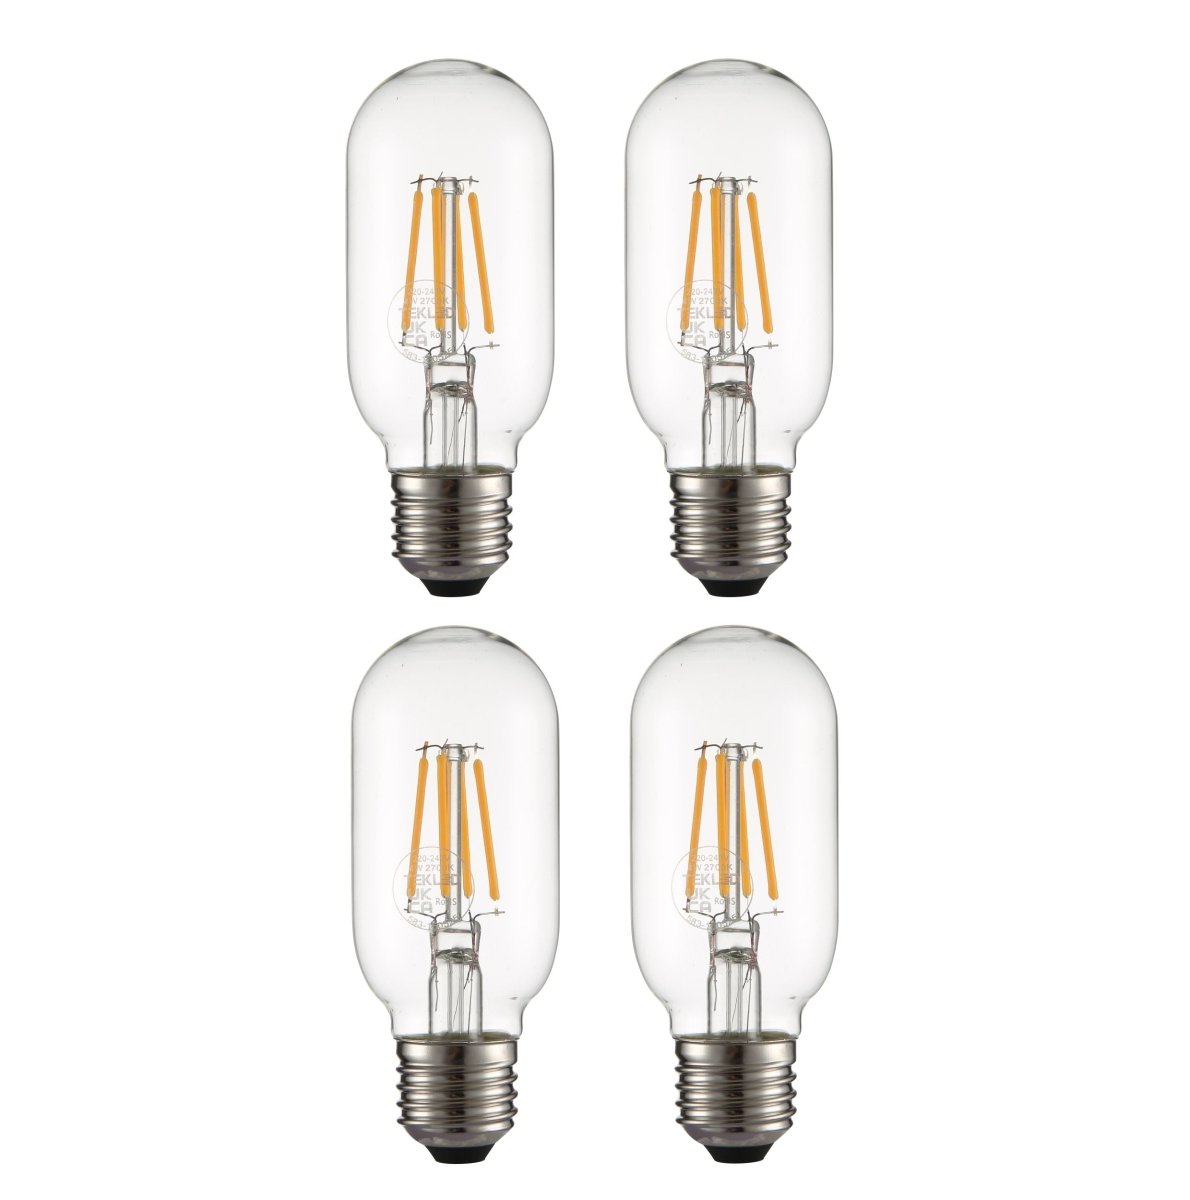 Tubular E14 satin white LED light bulb